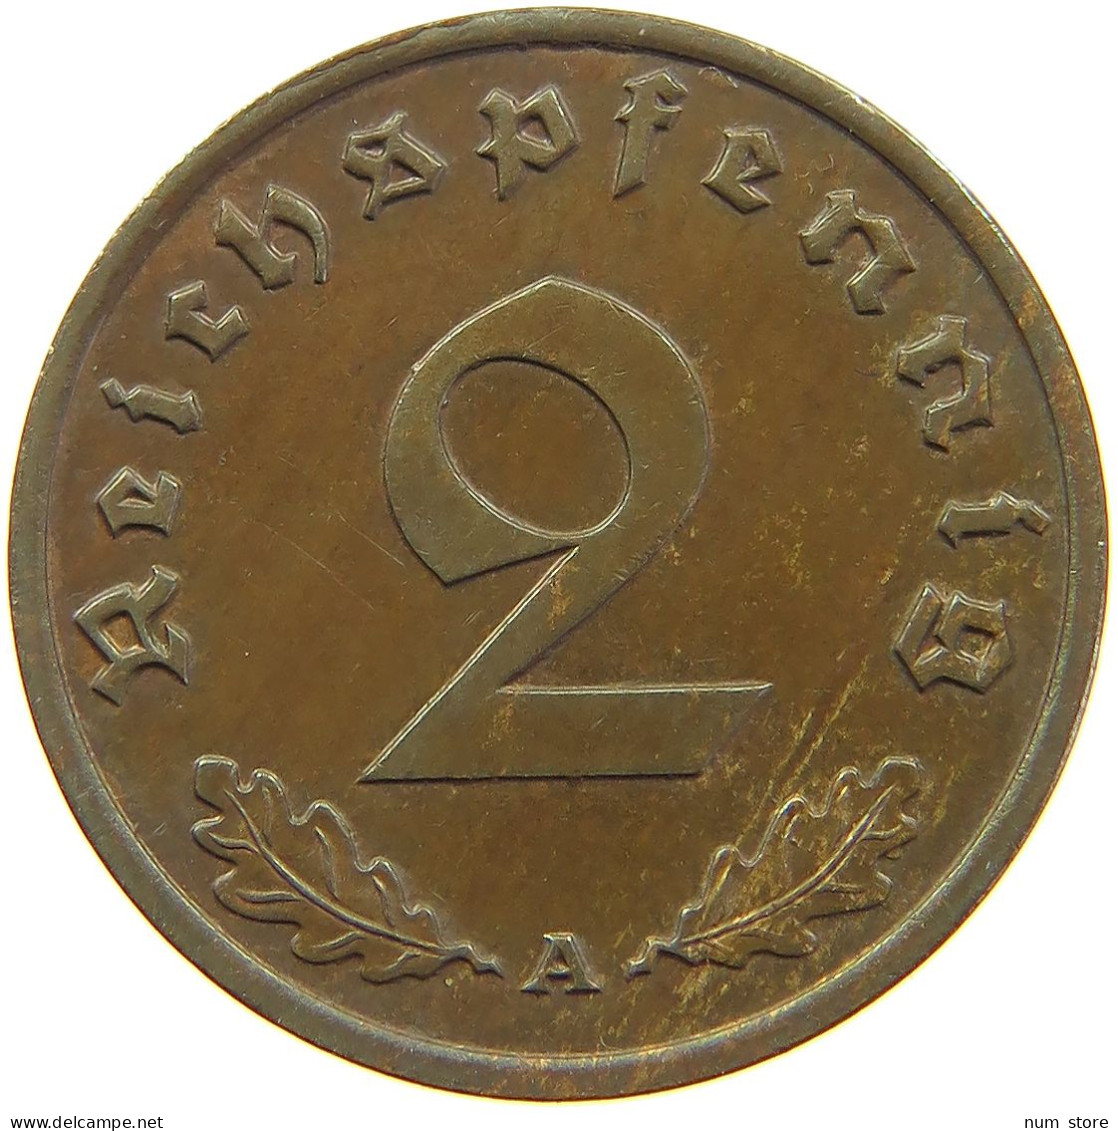 GERMANY 2 REICHSPFENNIG 1940 A #s095 0177 - 2 Reichspfennig